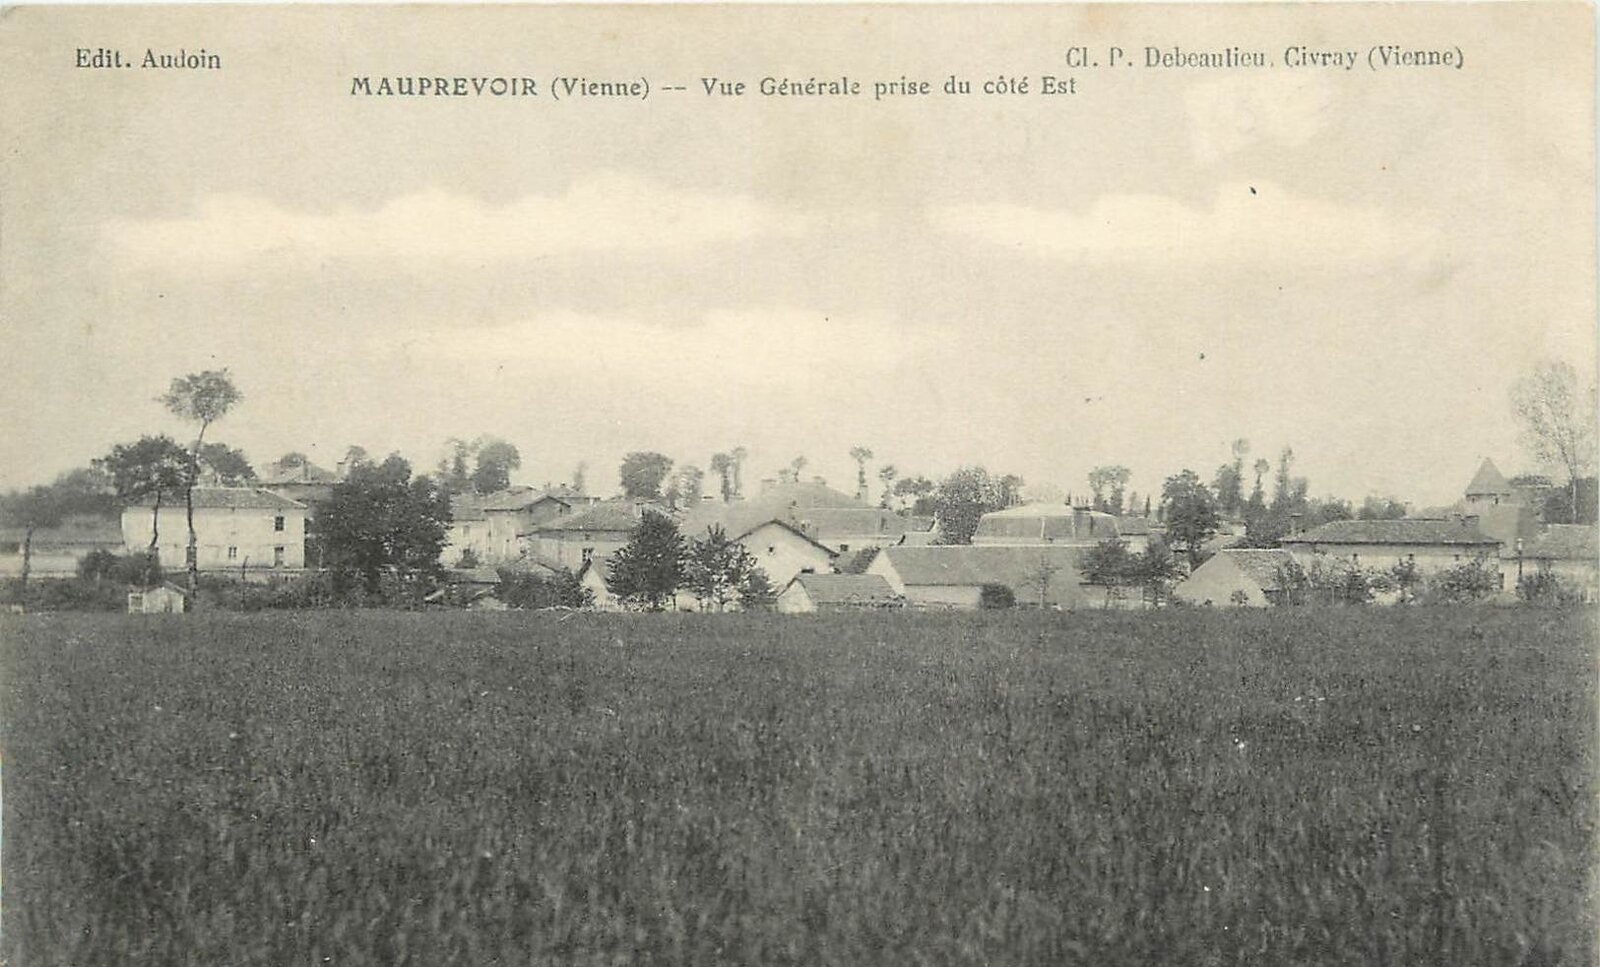 Carte postale non-datée de Mauprévoir (Geneanet)